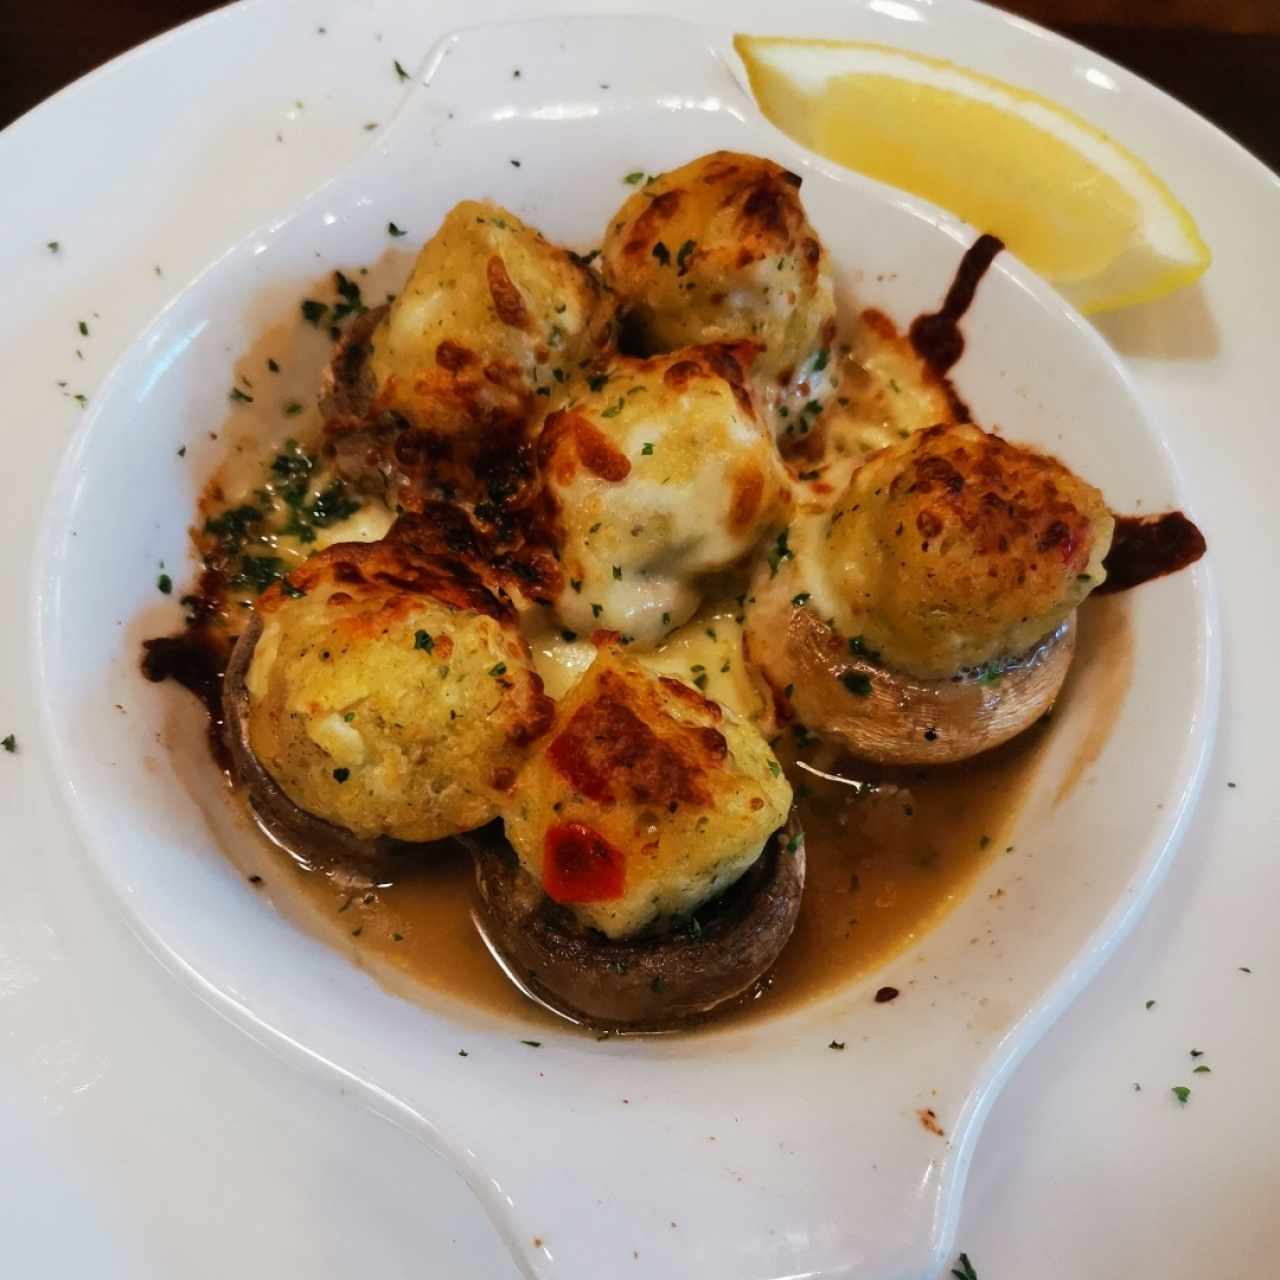 Seafood stuffed mushrooms